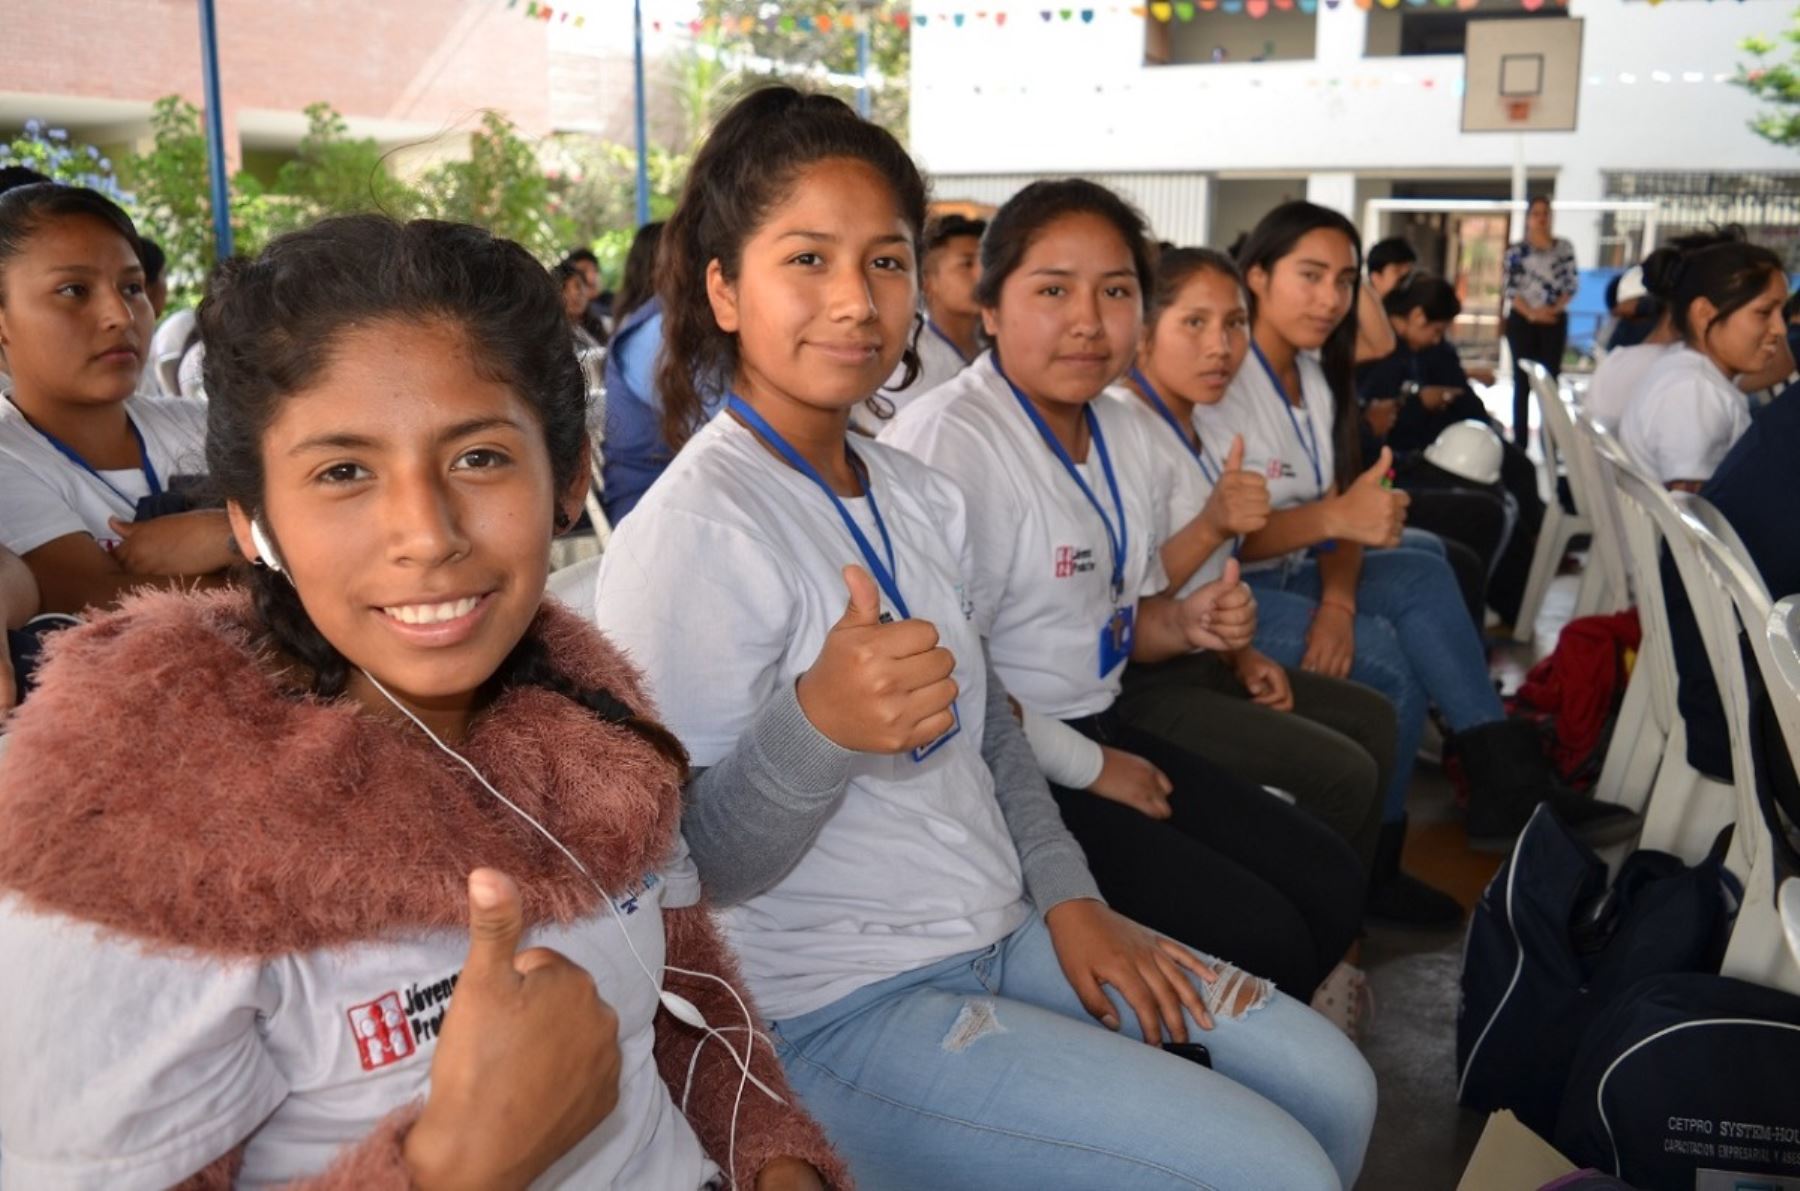 Ministerio de trabajo otorga certificados de capacitación laboral a 120 jóvenes de Huaycán